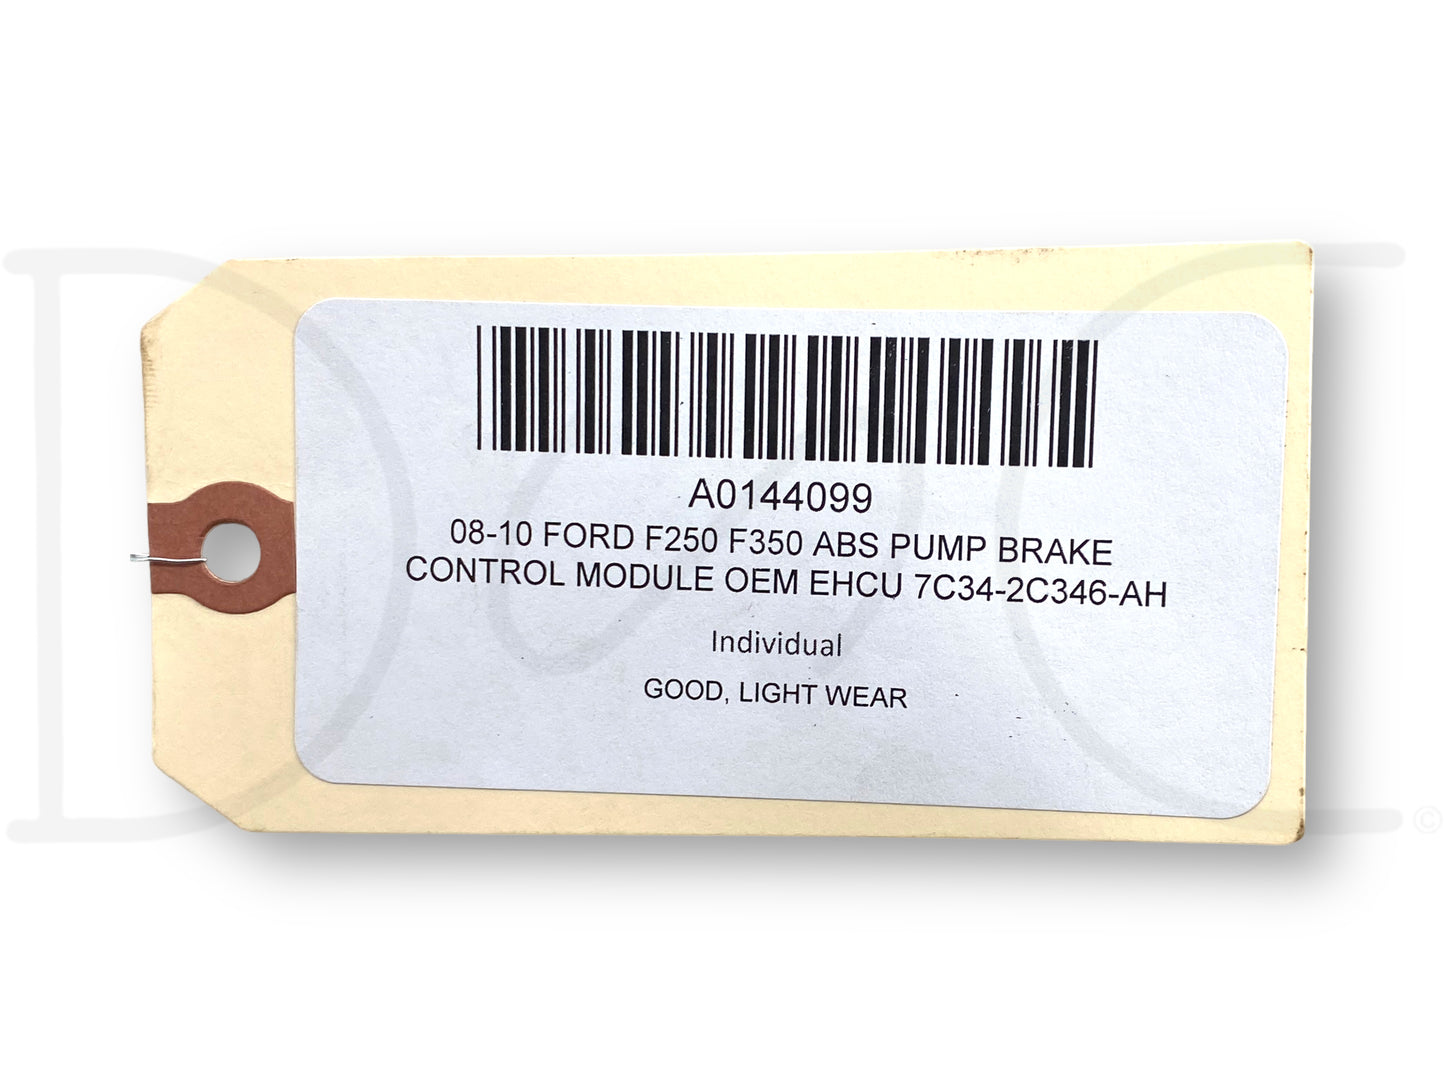 08-10 Ford F250 F350 ABS Pump Brake Control Module OEM EHCU 7C34-2C346-Ah